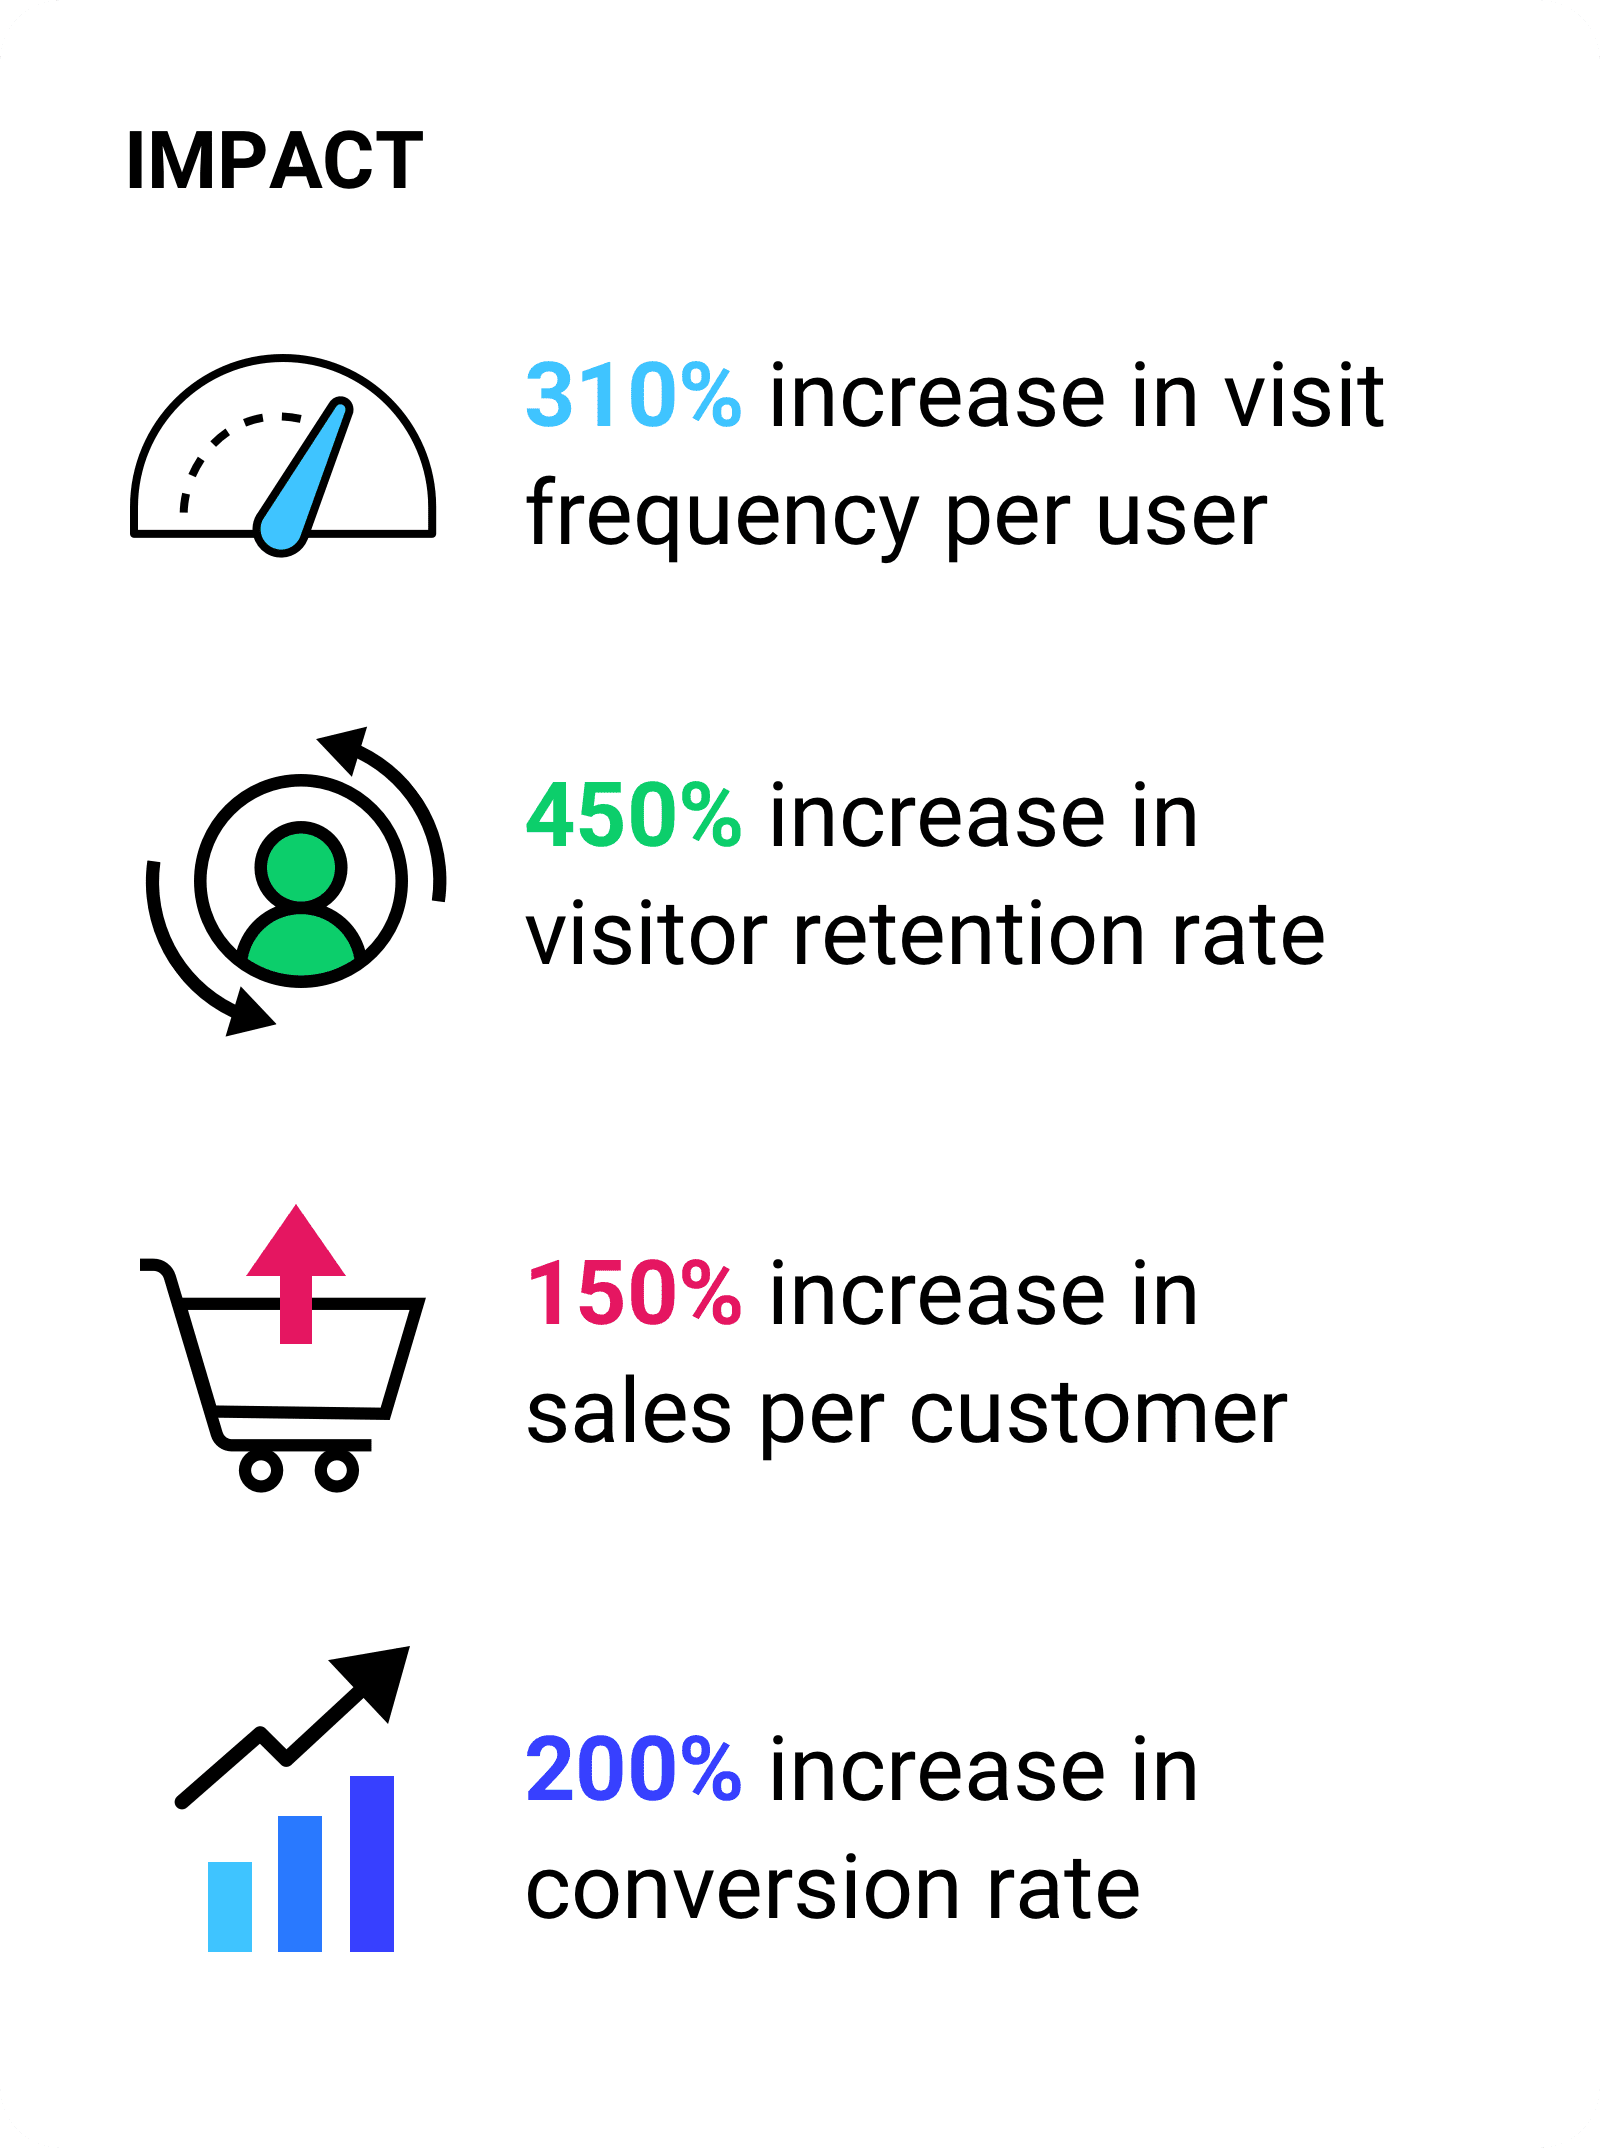 每位用户的访问频率提高了 310%。访问者留存率提高了 450%。每位客户的销售额增加了 150%。转化率提高了 200%。